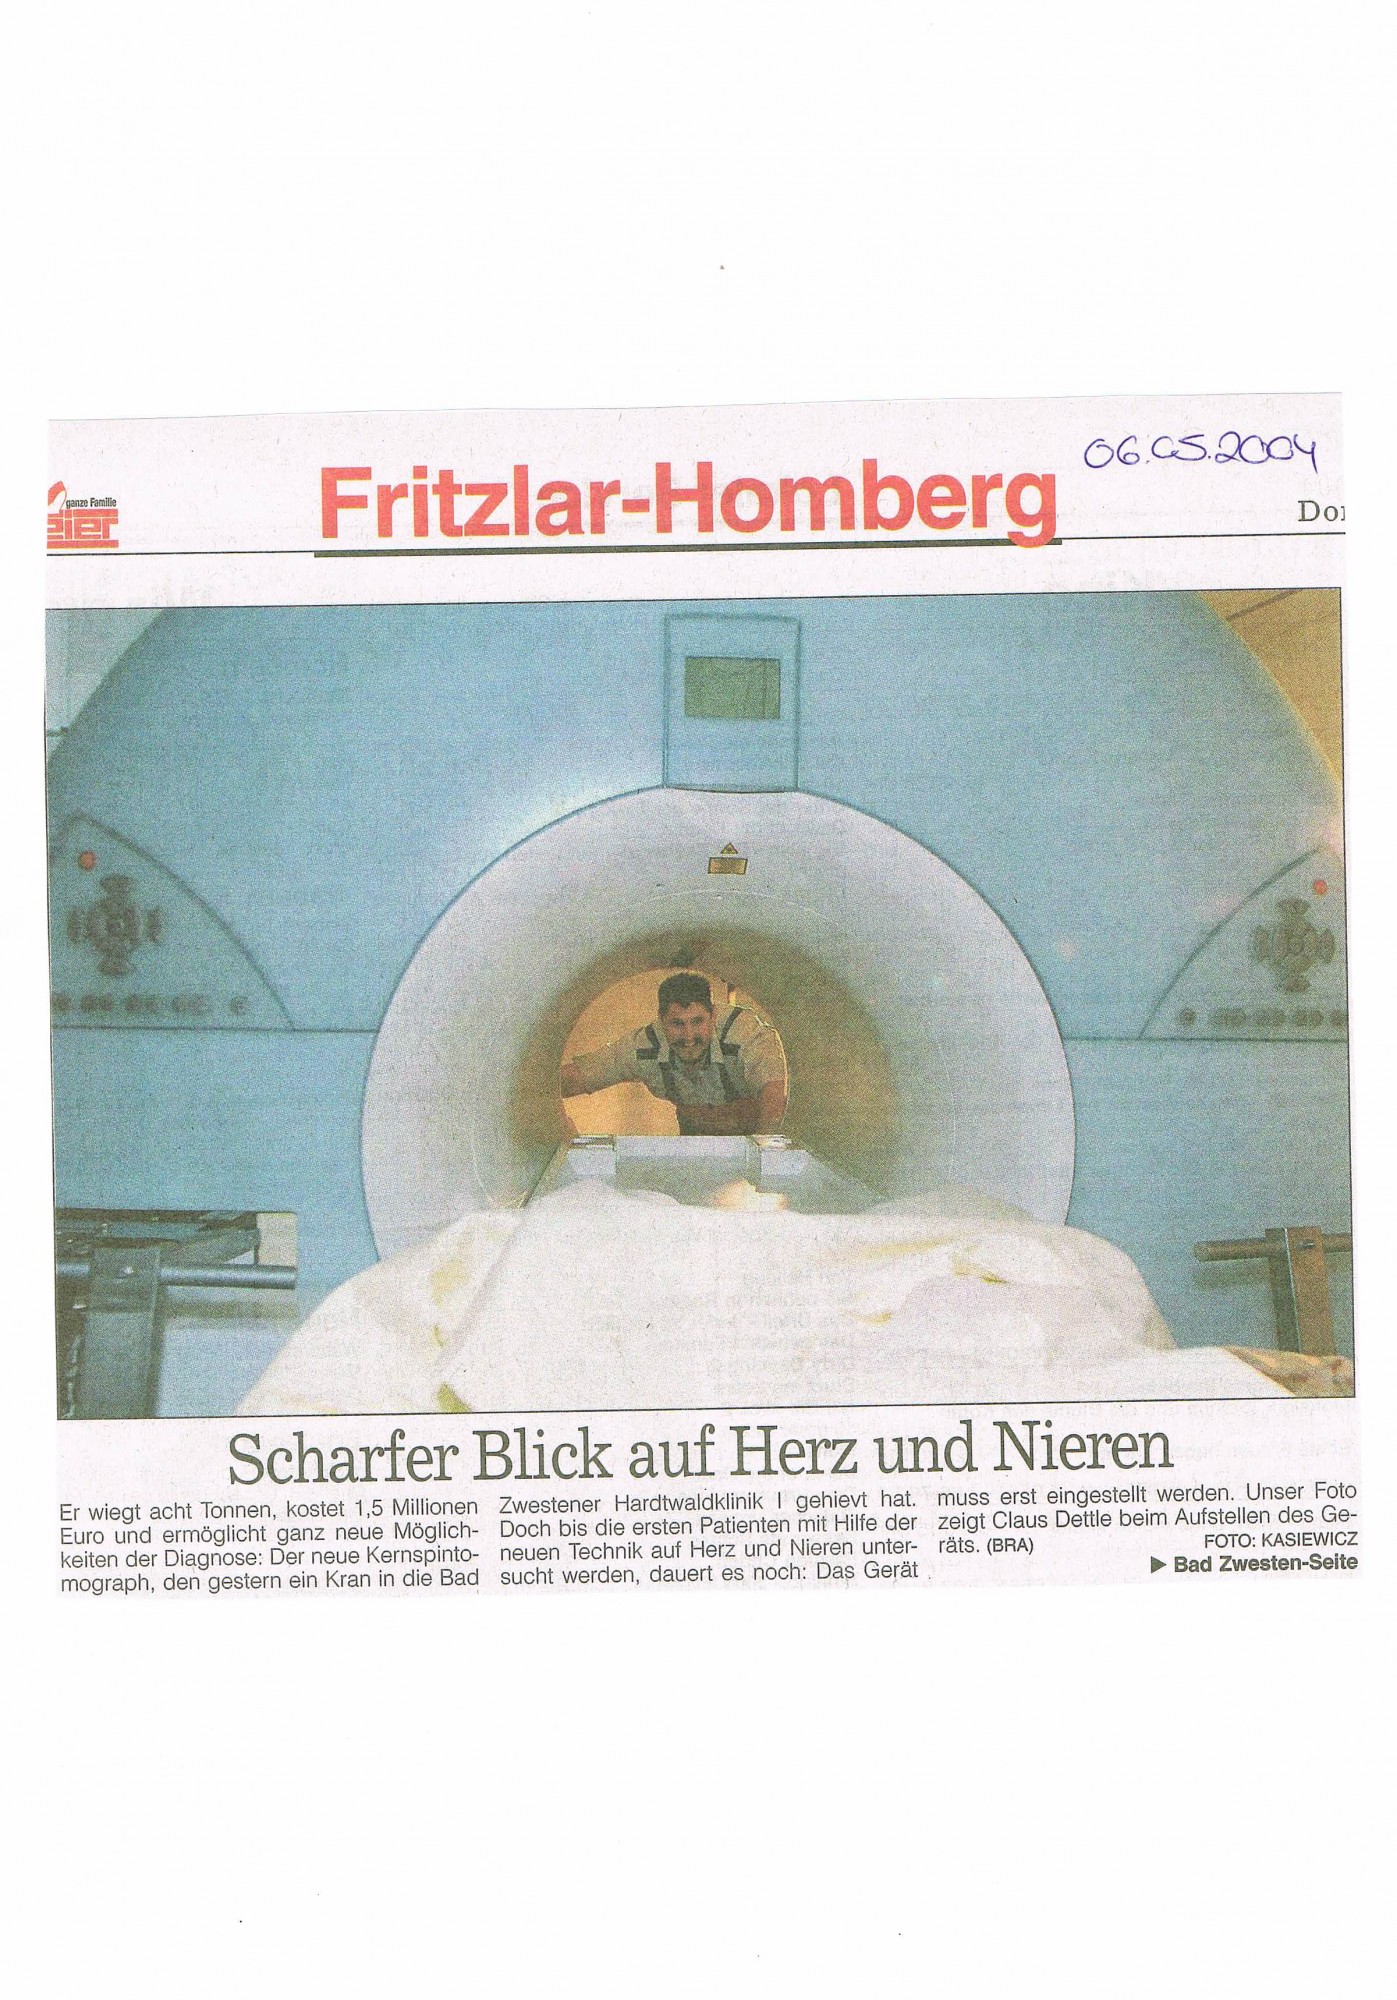 2004-05-06 Scharfer Blick auf Herz und Nieren-001